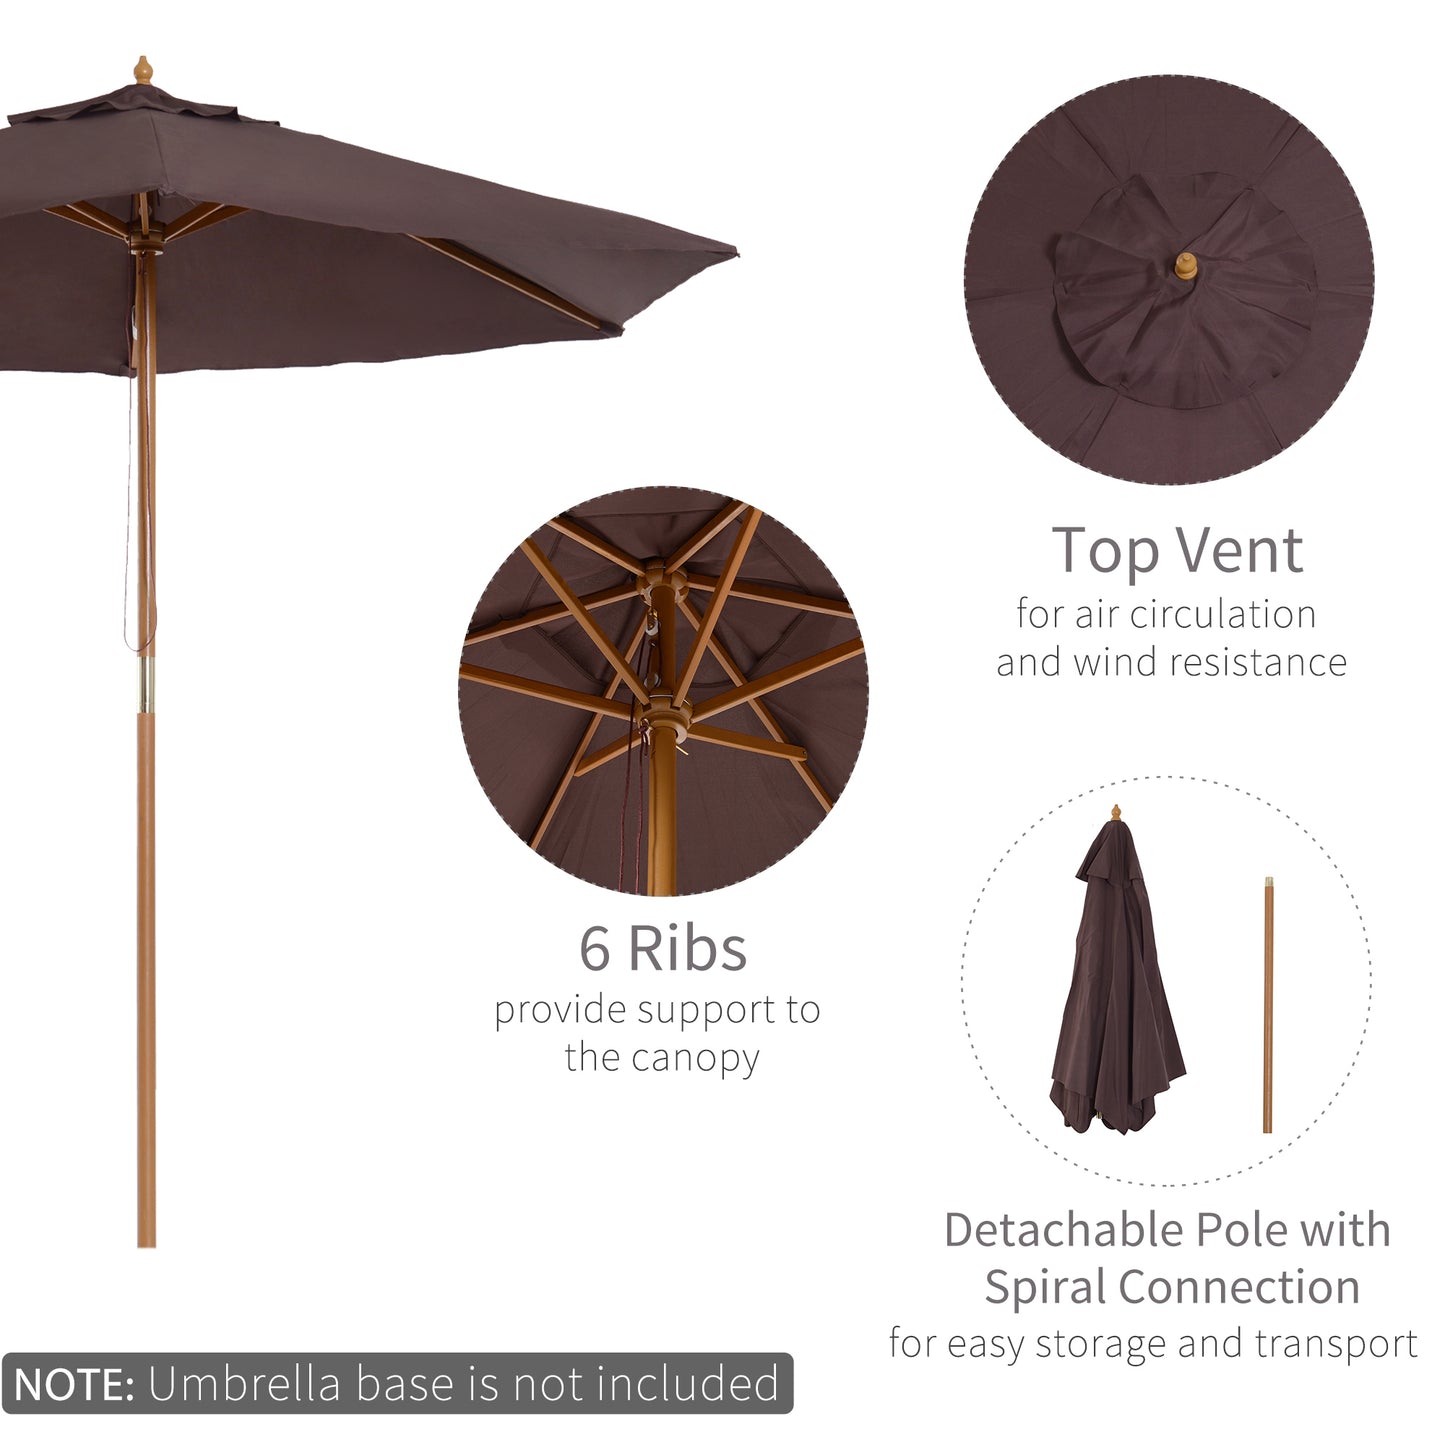 Outsunny 2.5 m New Garden Patio Outdoor Wooden Parasol Sun Shade Umbrella Canopy - Coffee